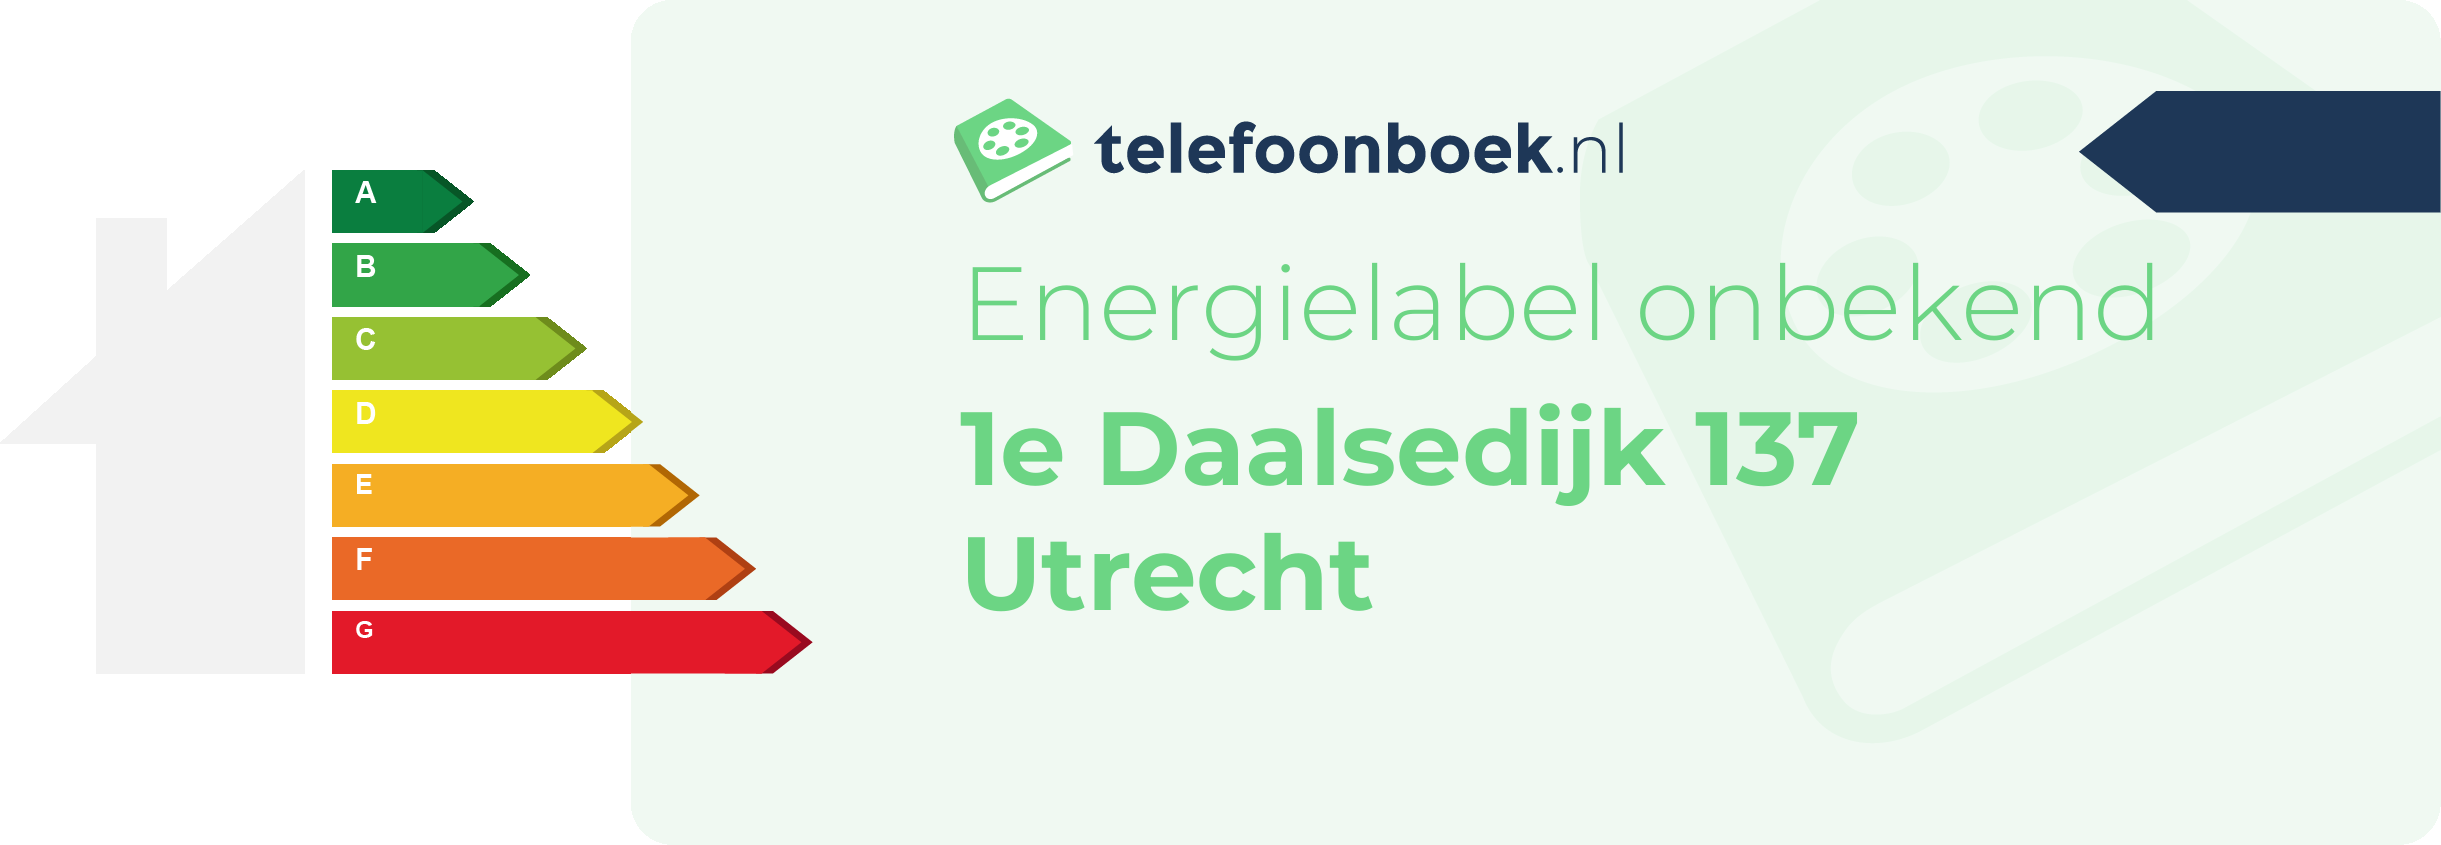 Energielabel 1e Daalsedijk 137 Utrecht